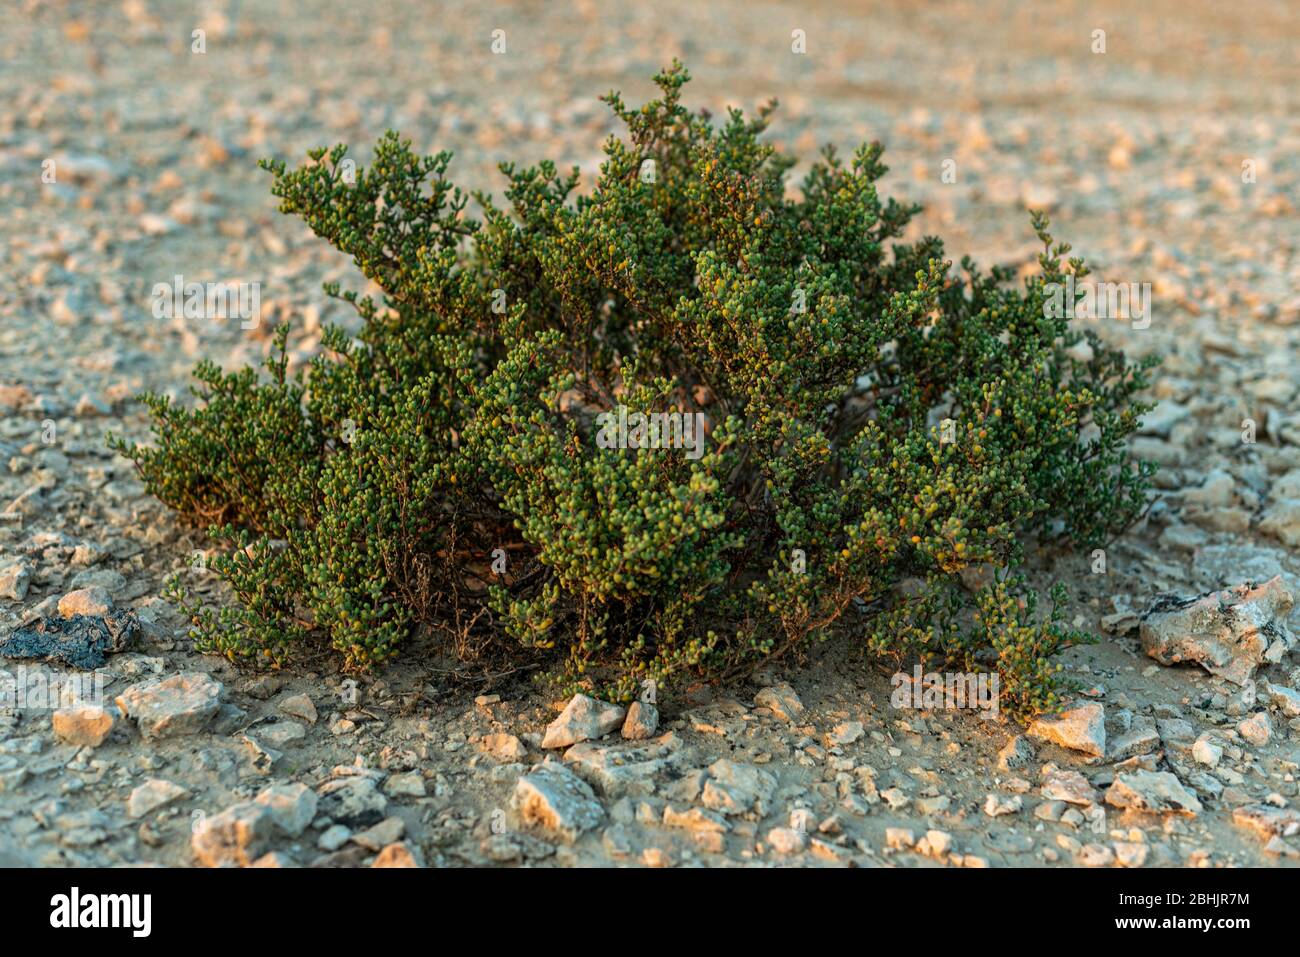 Ein Naturfoto im Freien von einem lebenden wilden grünen Strauch, der in der trockenen Sandwüste-Umgebung unversehrte wächst, aufgenommen an einem sonnigen Tag Stockfoto